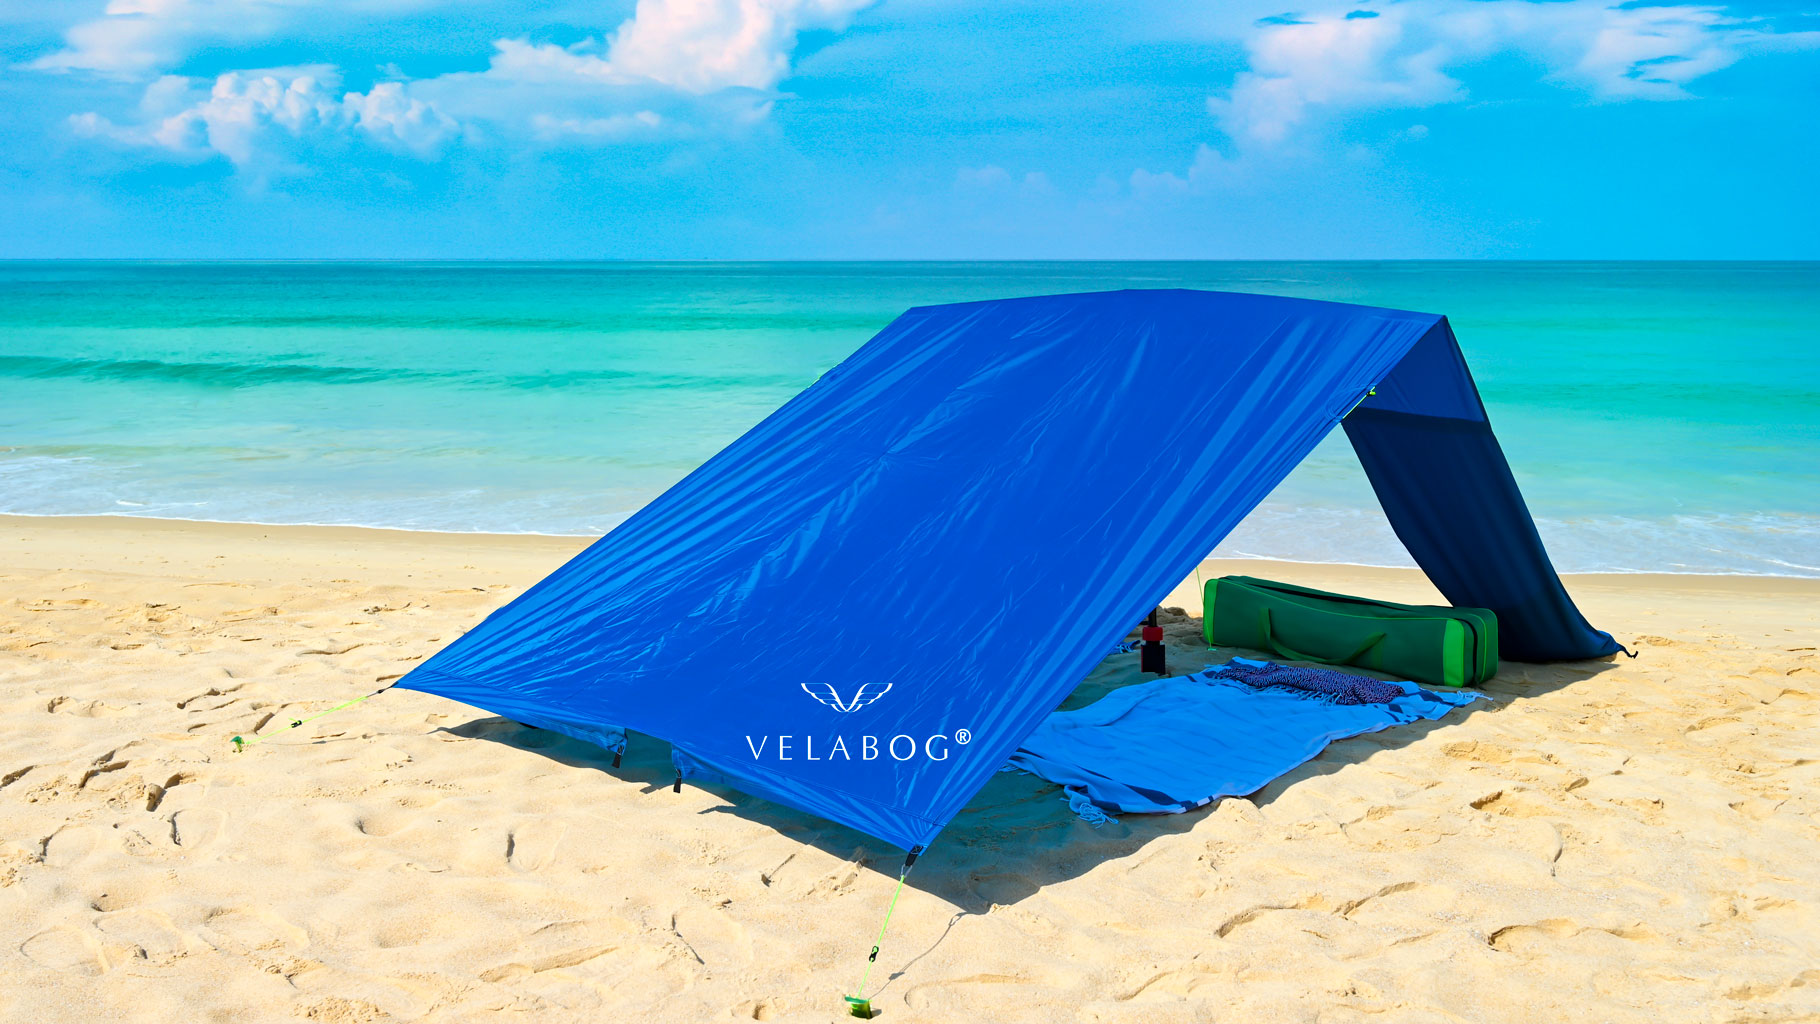 Toldo playa Velabog Breeze, azul, en una playa sin viento. Toldo playa, sombrilla y refugio de playa en uno. También puede emplearse sin viento. No se acumula calor. Muy grande y estable. Vista desde atrás.